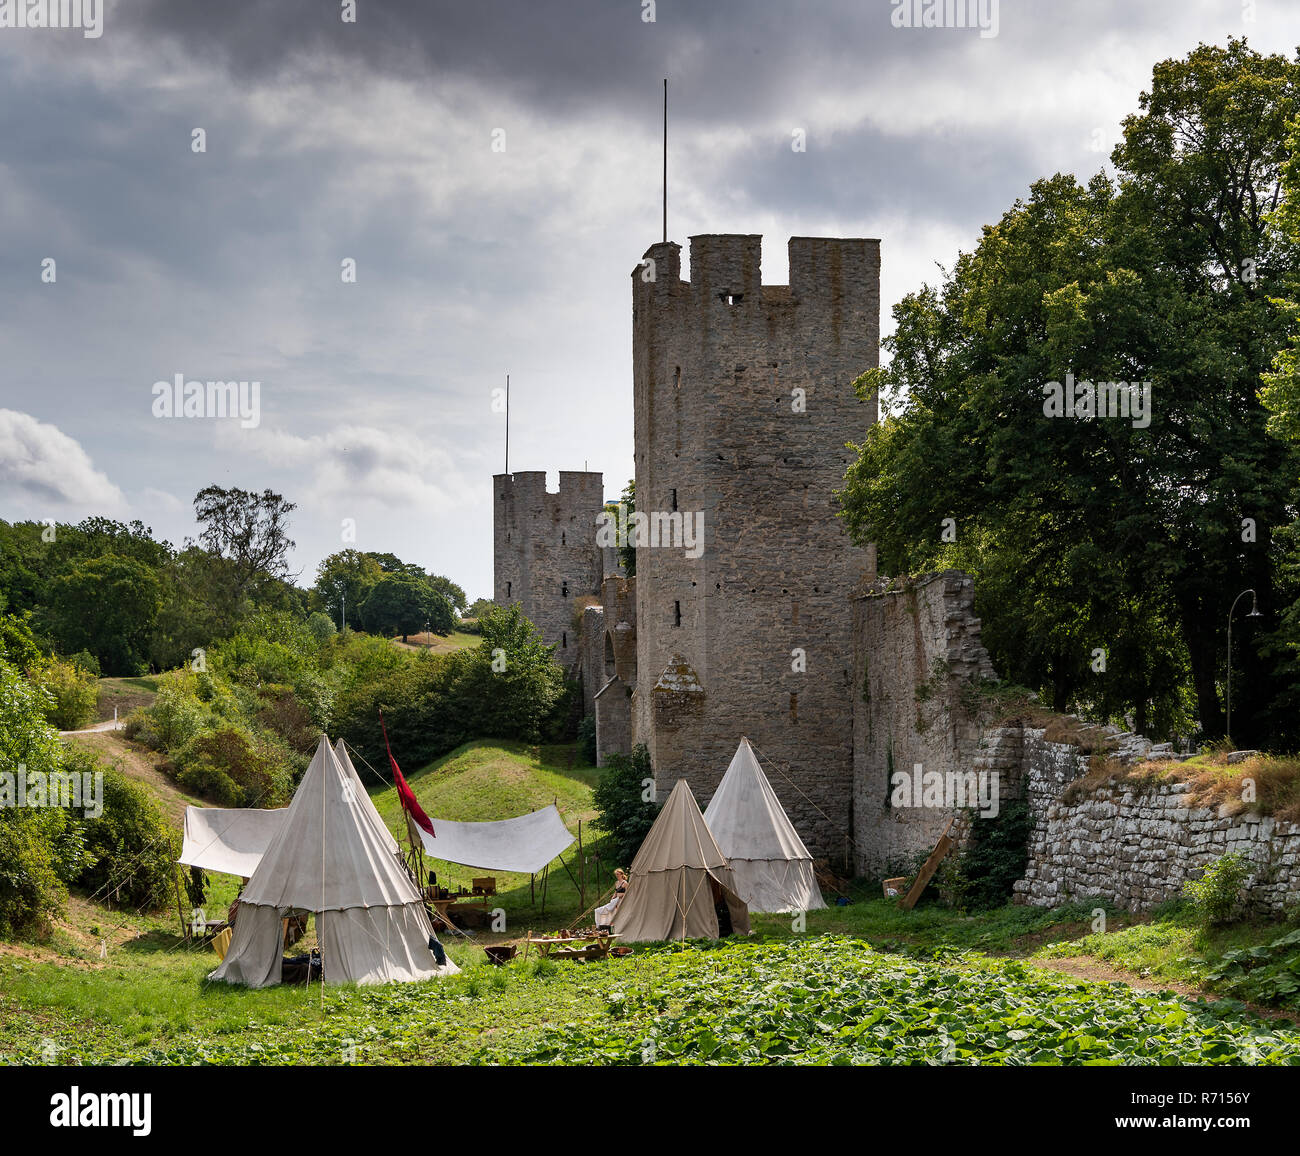 Tenda camp, la settimana medievale, mura medievali della città con torri difensive, Sito Patrimonio Mondiale dell'Unesco, Visby, isola di Gotland, Svezia Foto Stock